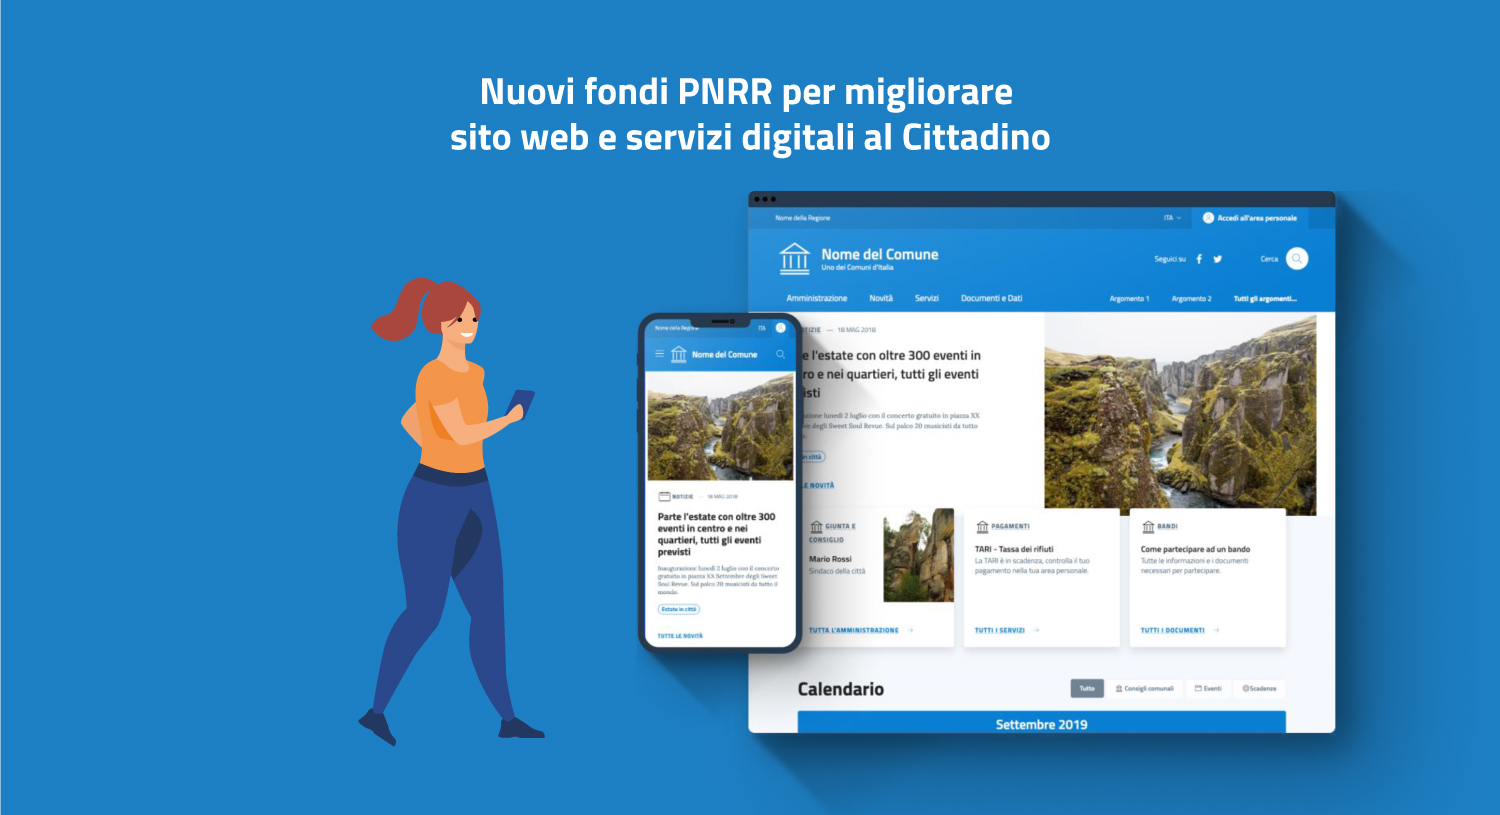 Nuovi fondi PNRR per siti web e servizi digitali